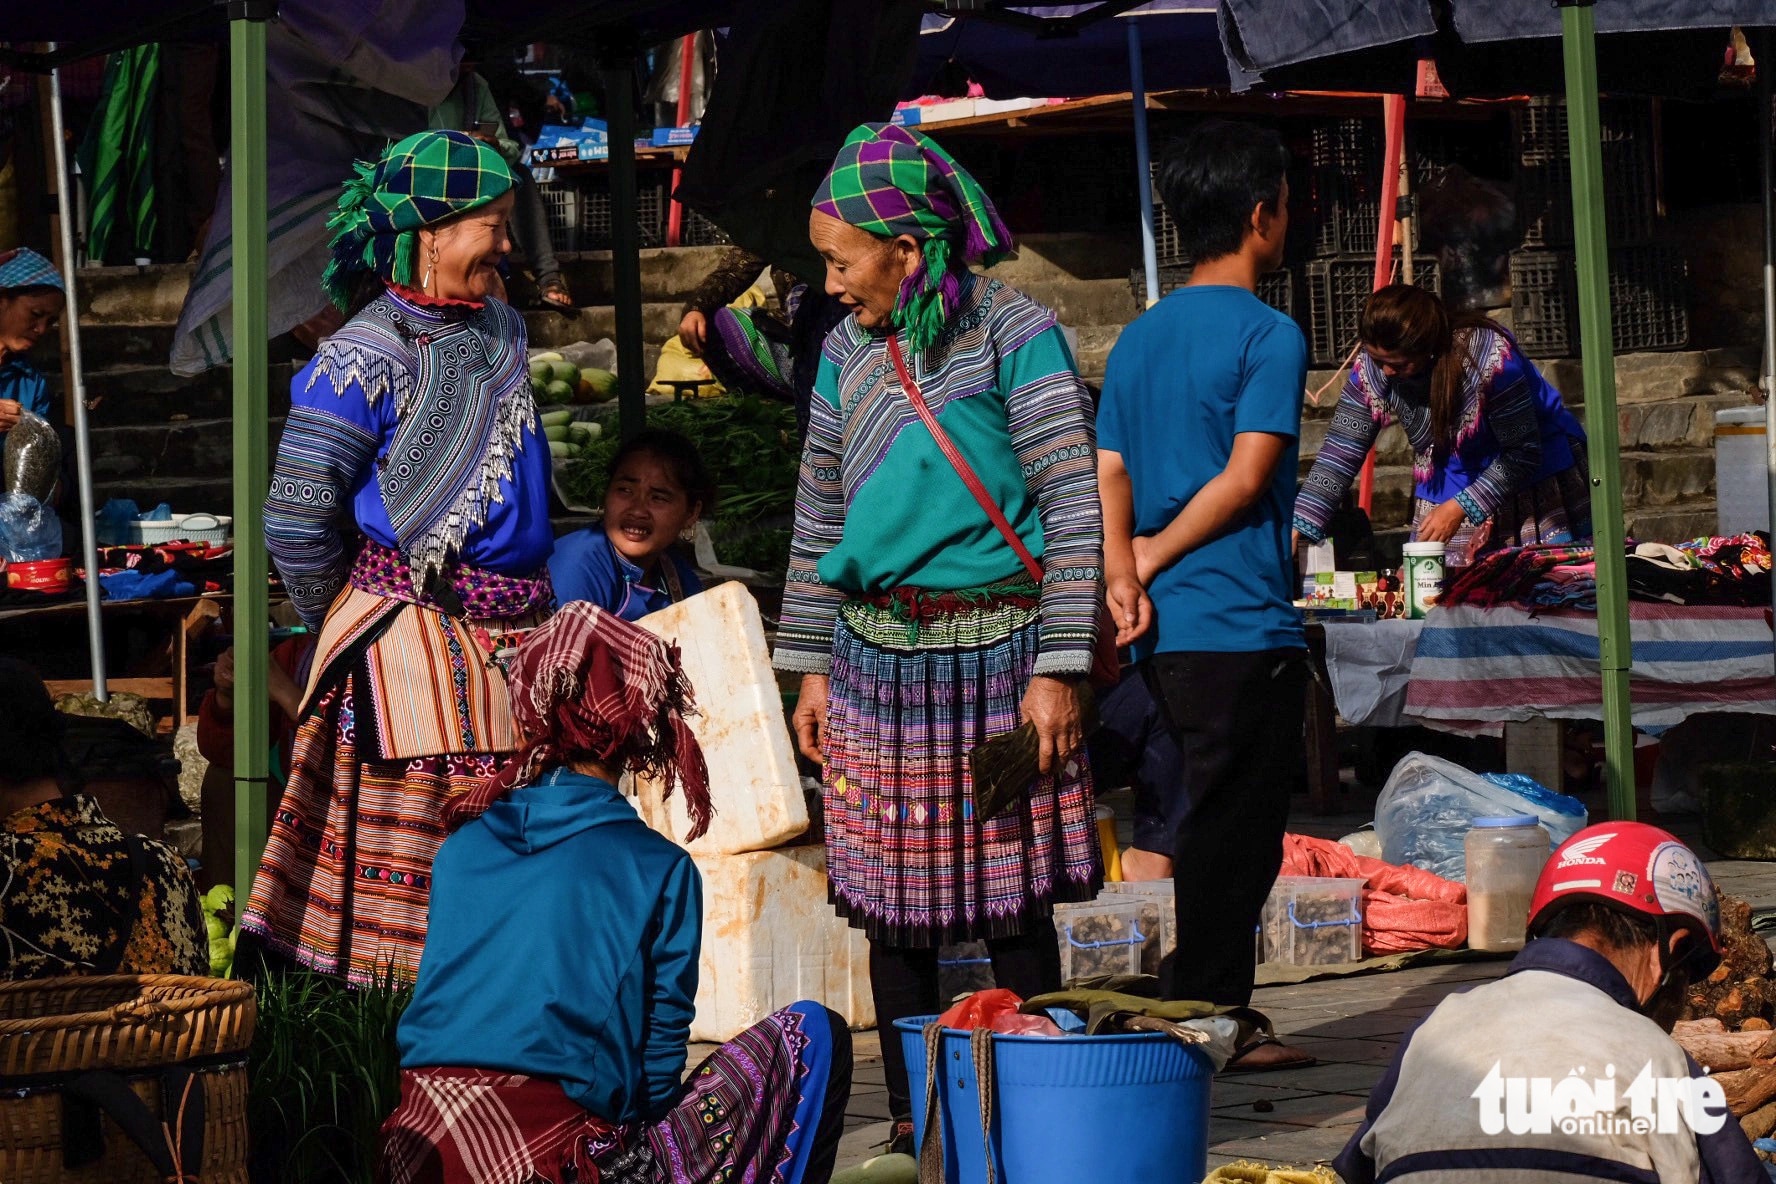 Phiên chợ cũng là nơi để bà con địa phương giao lưu văn hóa, hàn huyên sau một tuần xa chợ